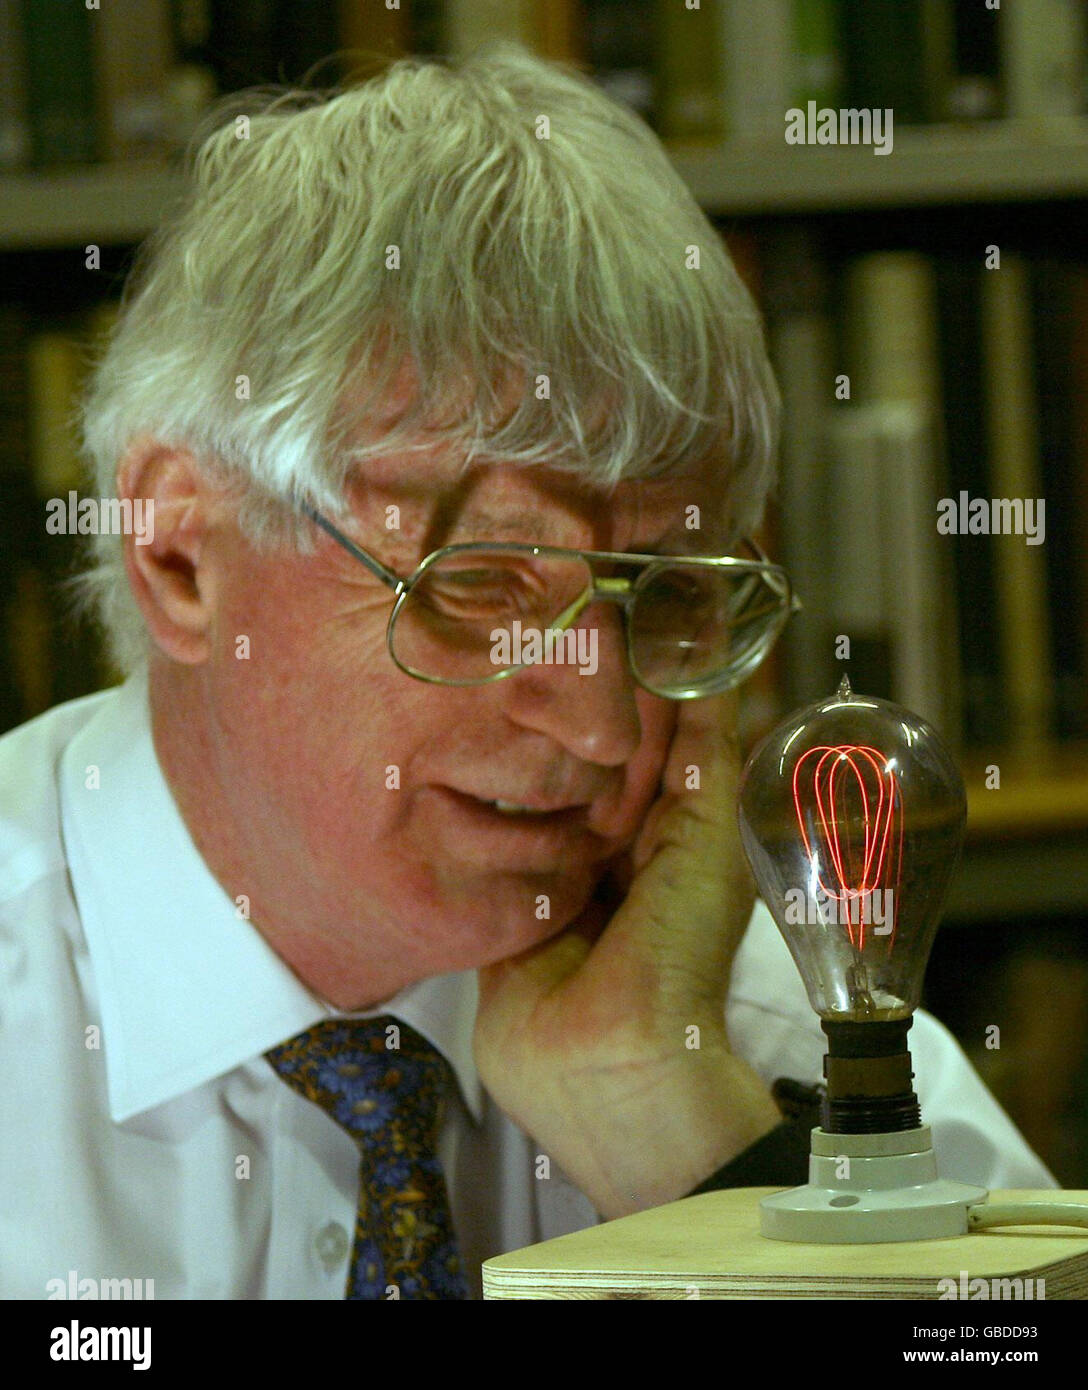 Dr Ian Edwards de l'Université de Newcastle avec une première ampoule à filament de carbone du début des années 1900, alors que la recherche est lancée pour découvrir la plus ancienne ampoule encore brillante dans une maison britannique, à la Société littéraire et philosophique, Westgate Road, Newcastle-upon-Tyne. Banque D'Images